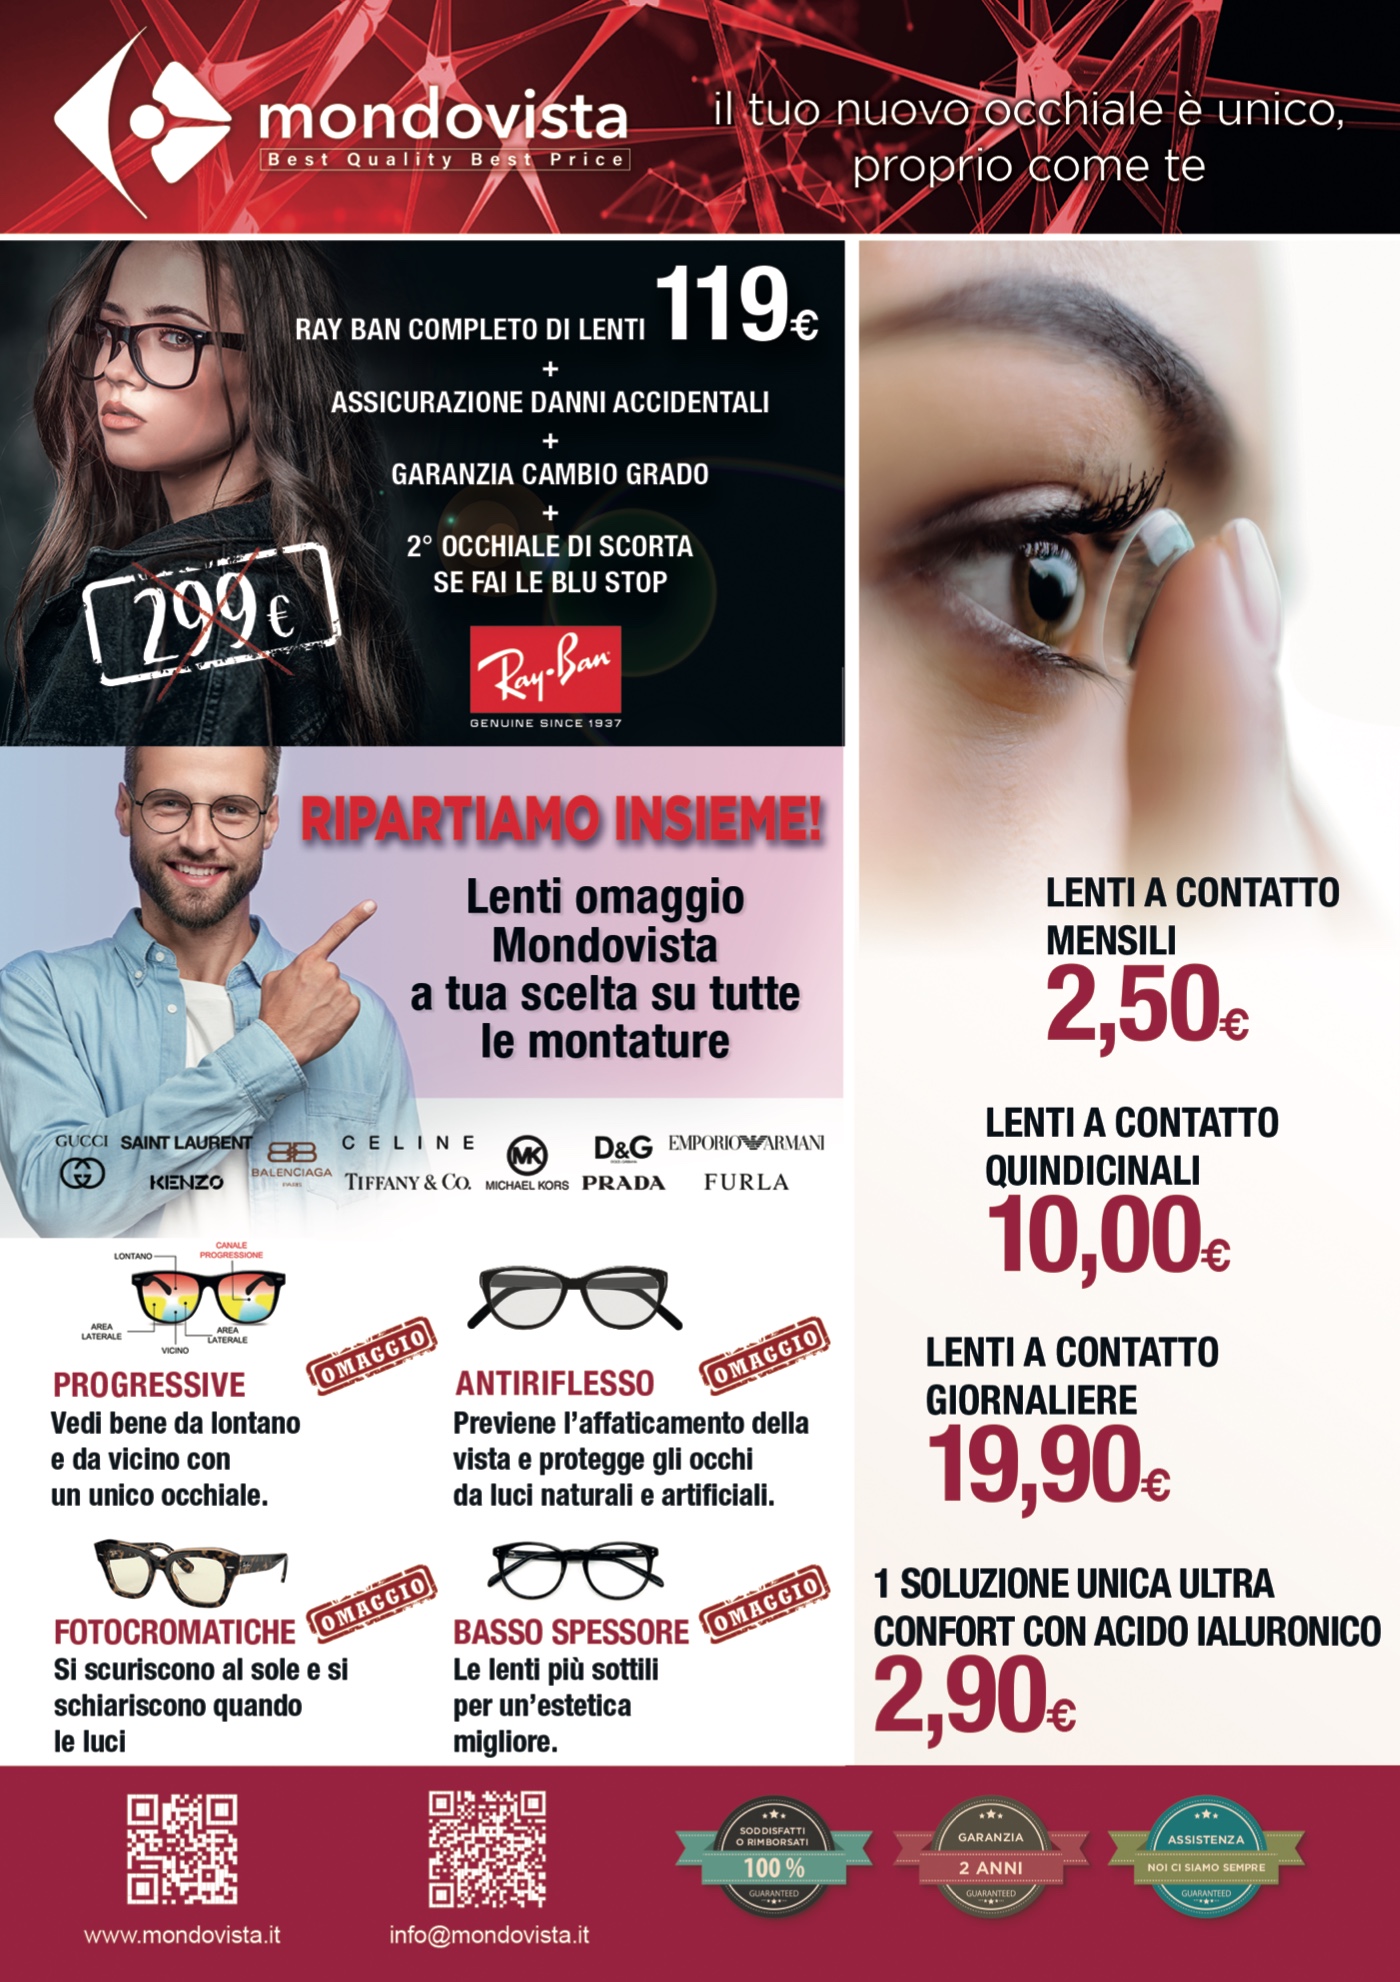 graphic design, grafico, photography, fotografia vittorio gaveglia, advertising, roma